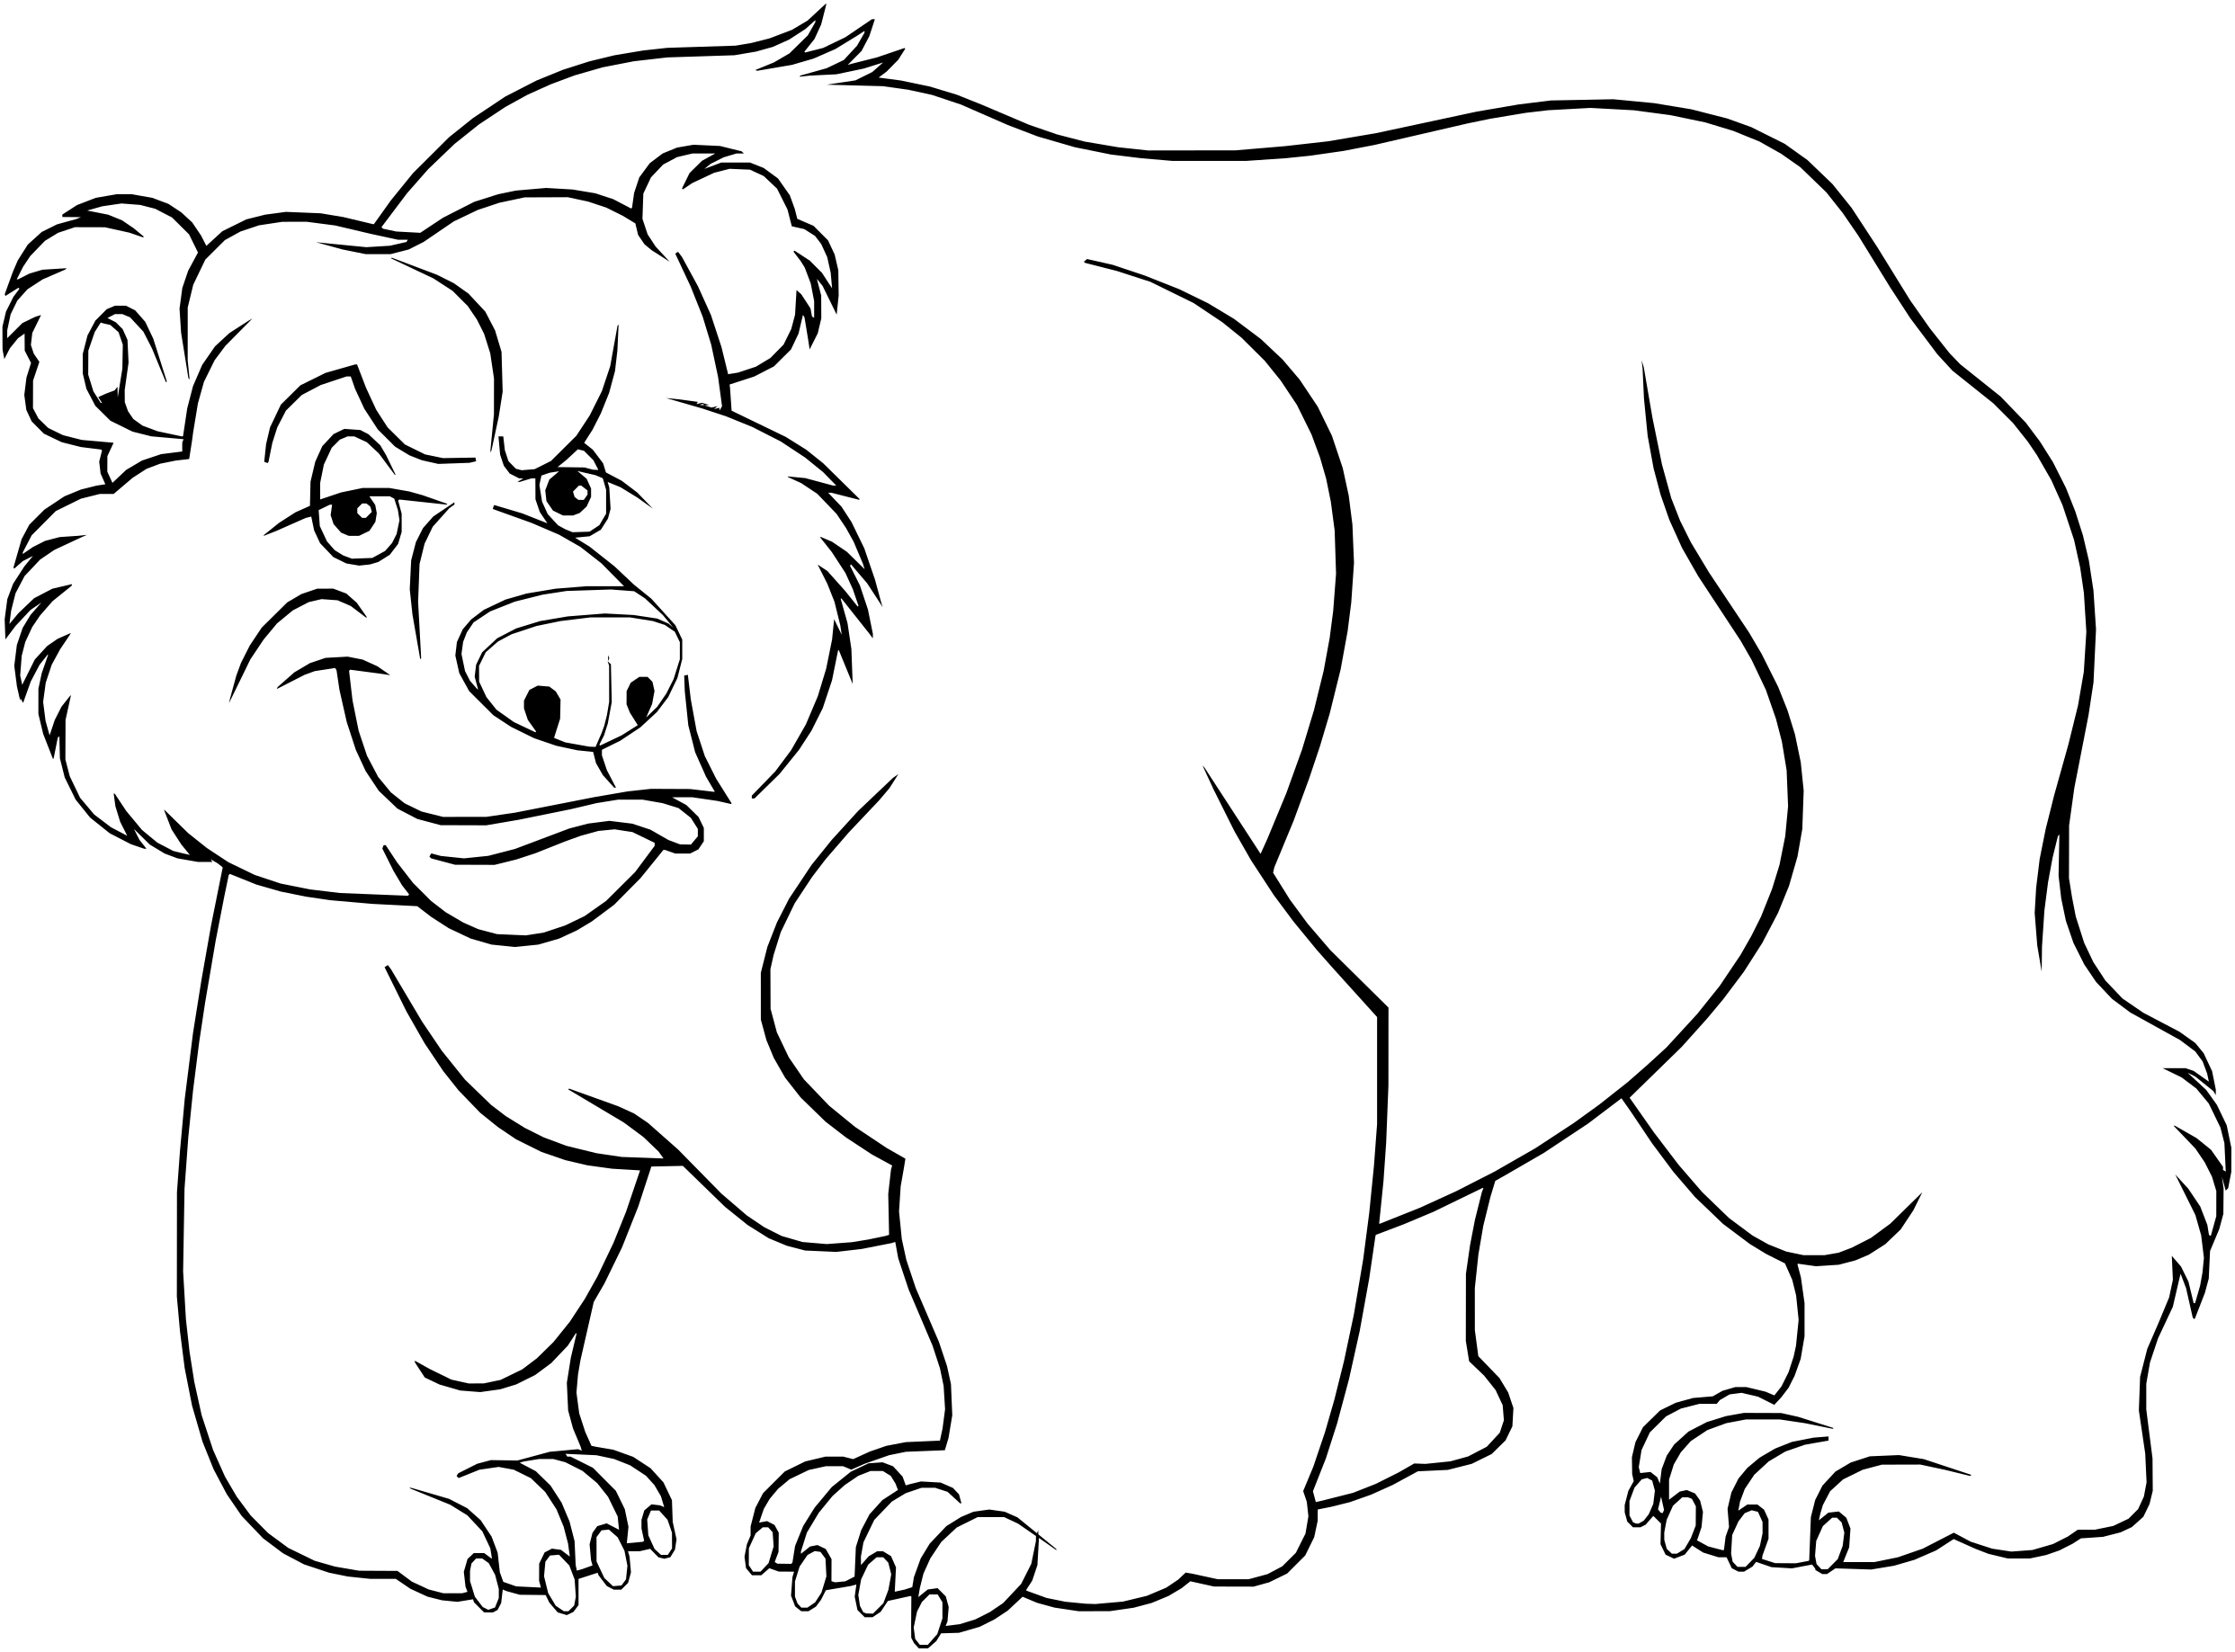 Bear-cartoon-grumpy-outline